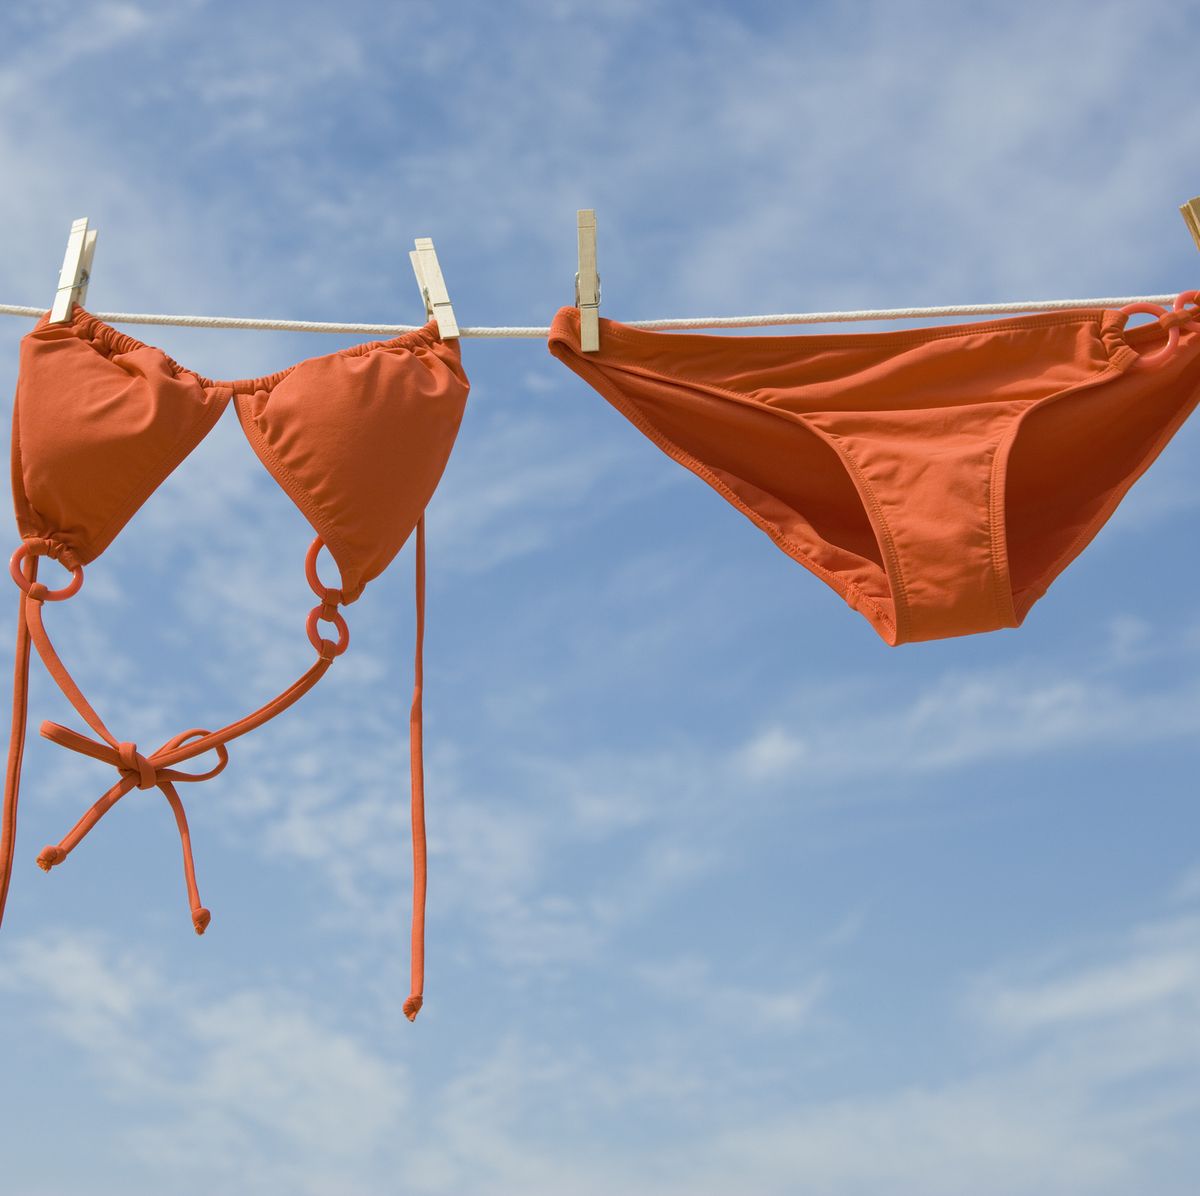 He probado el bikini menstrual de Primark: ¿vale la pena?